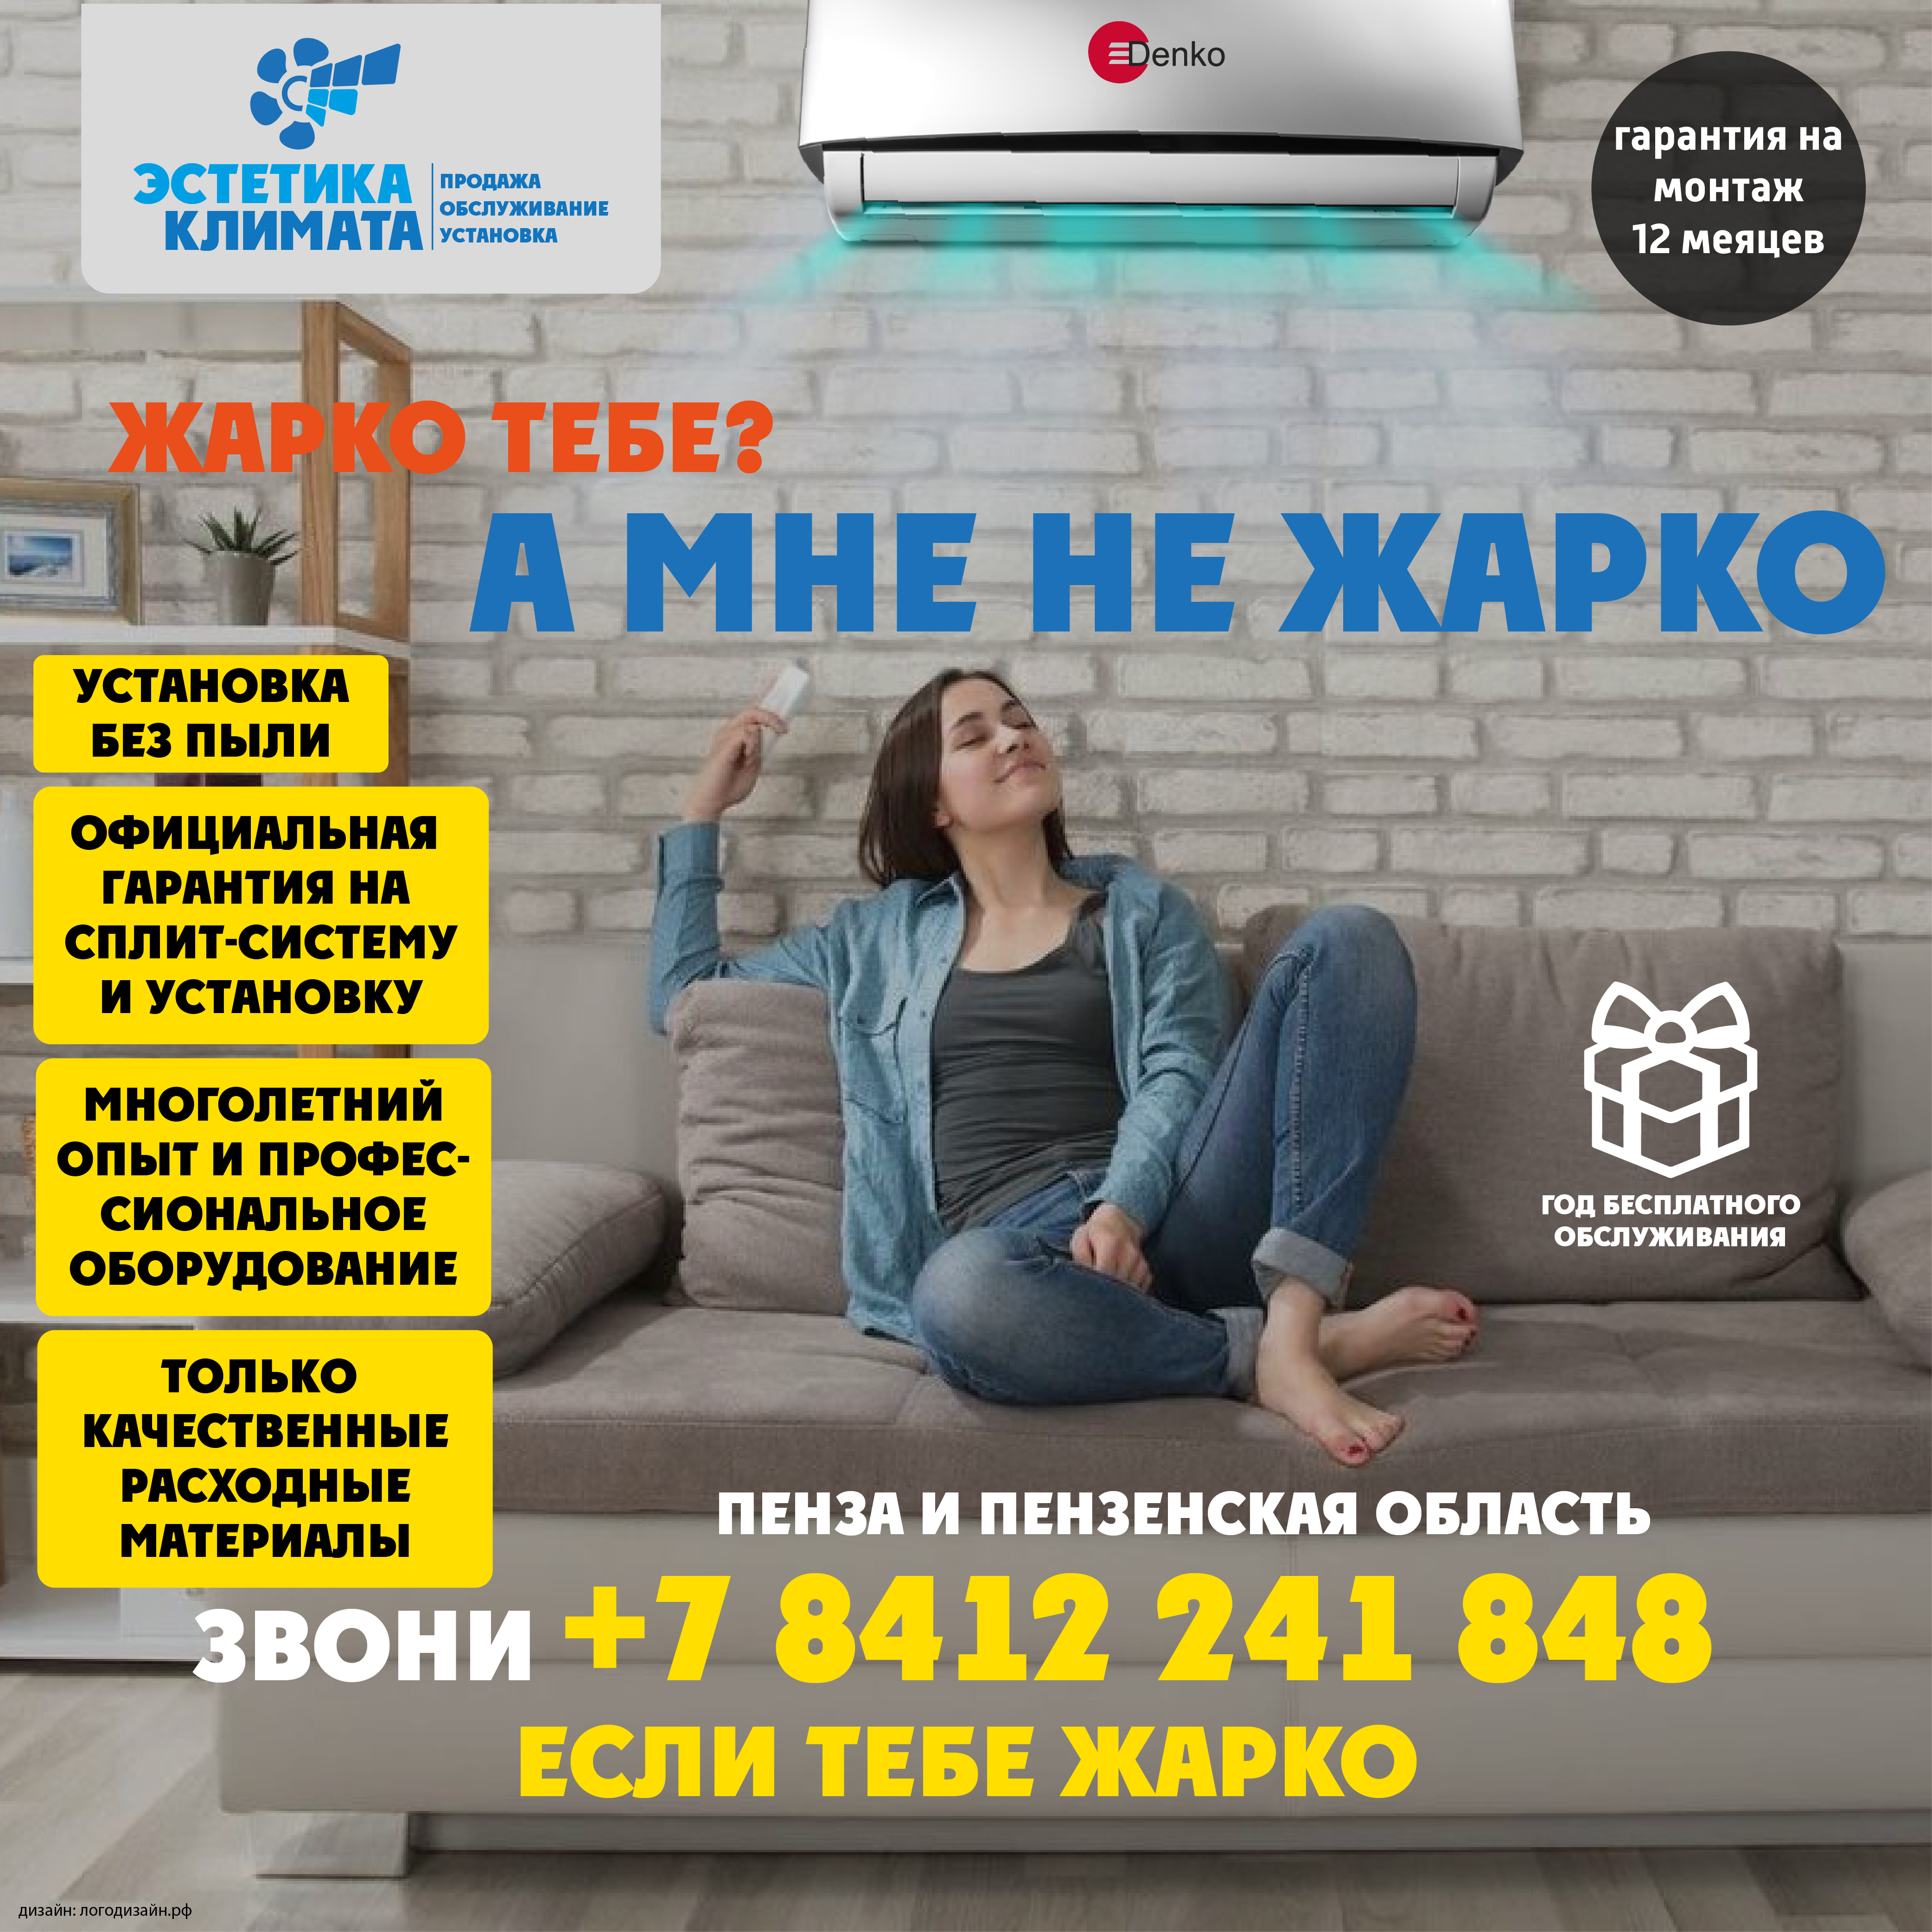 Баннер для рекламы в Яндекс Директ